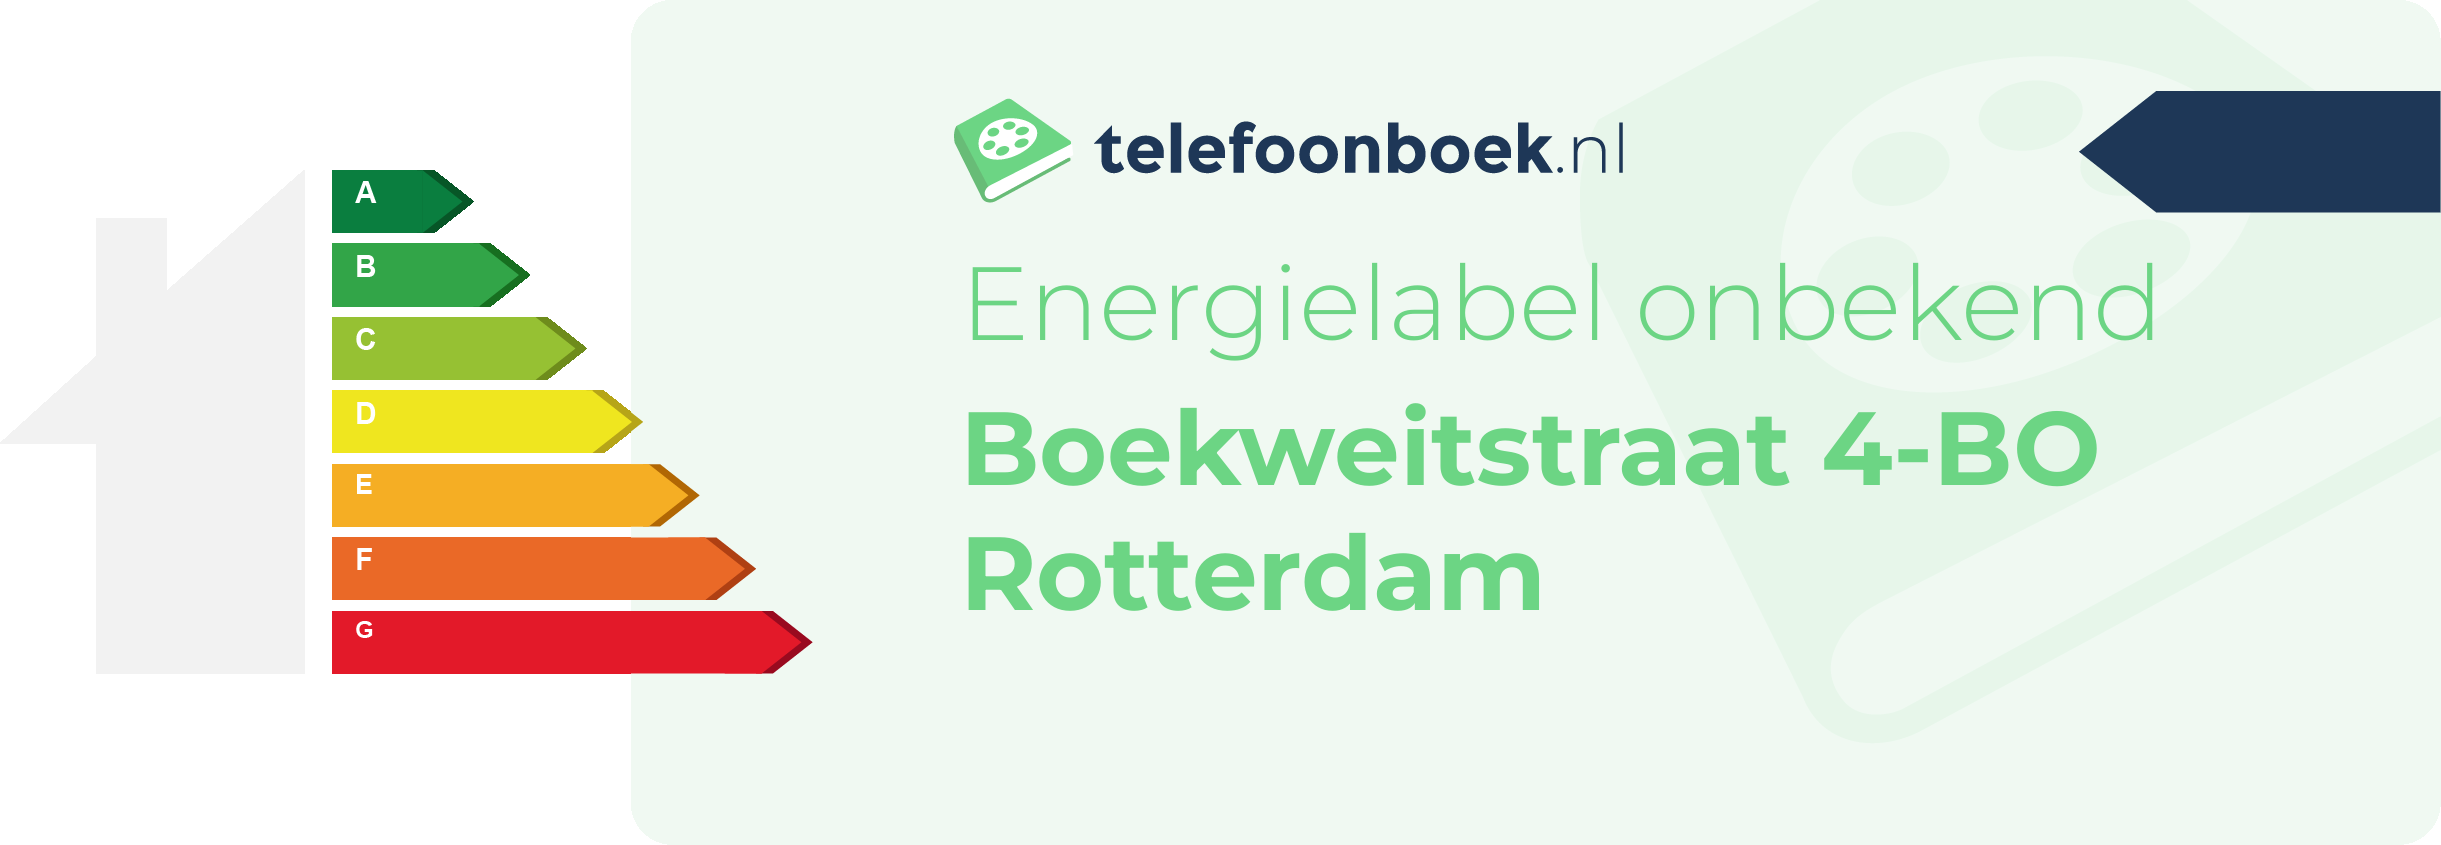 Energielabel Boekweitstraat 4-BO Rotterdam